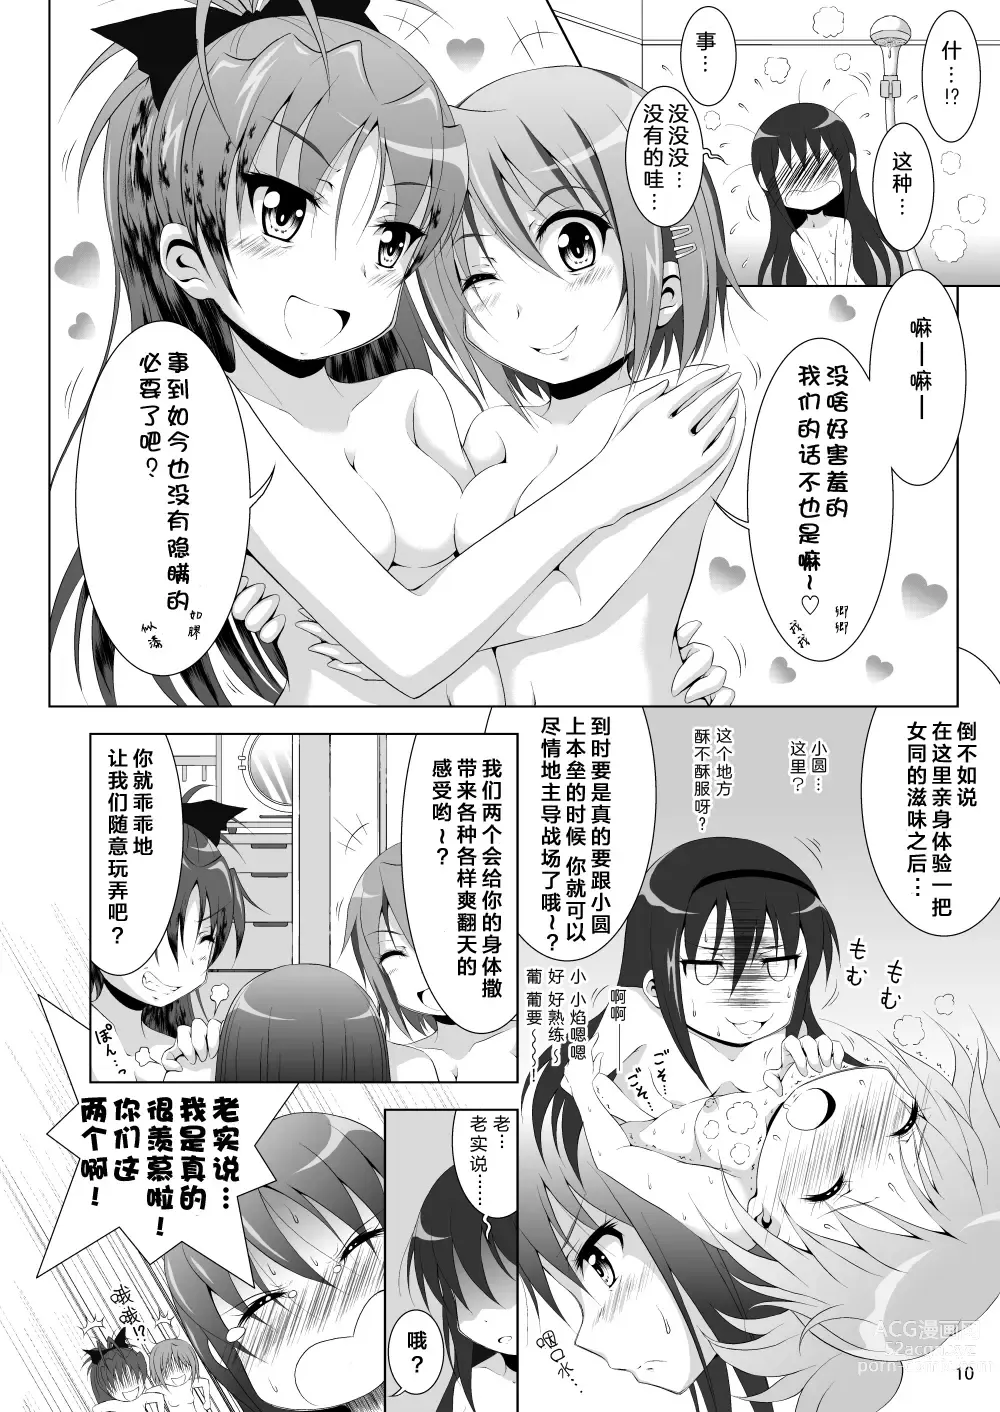 Page 10 of doujinshi Final AnSaya 3